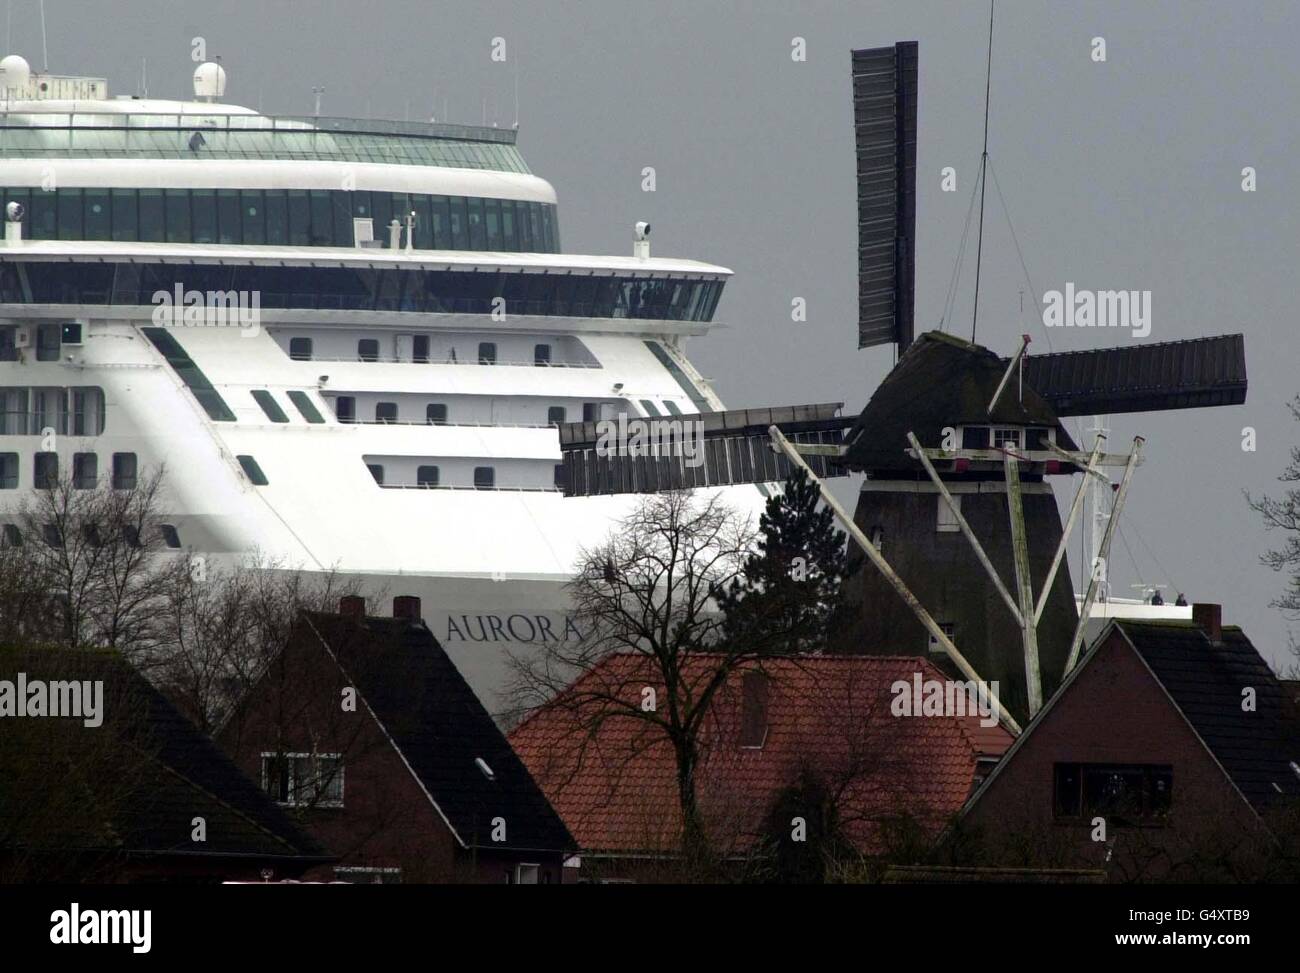 Il nuovo Super Liner di P&o l'Aurora da 200 milioni e 76,000 tonnellate, lasciando il Meyer Werft Yard a Papenburg, Germania del nord, per essere fatto scendere lungo il fiume EMS per iniziare le prove in mare. Foto Stock